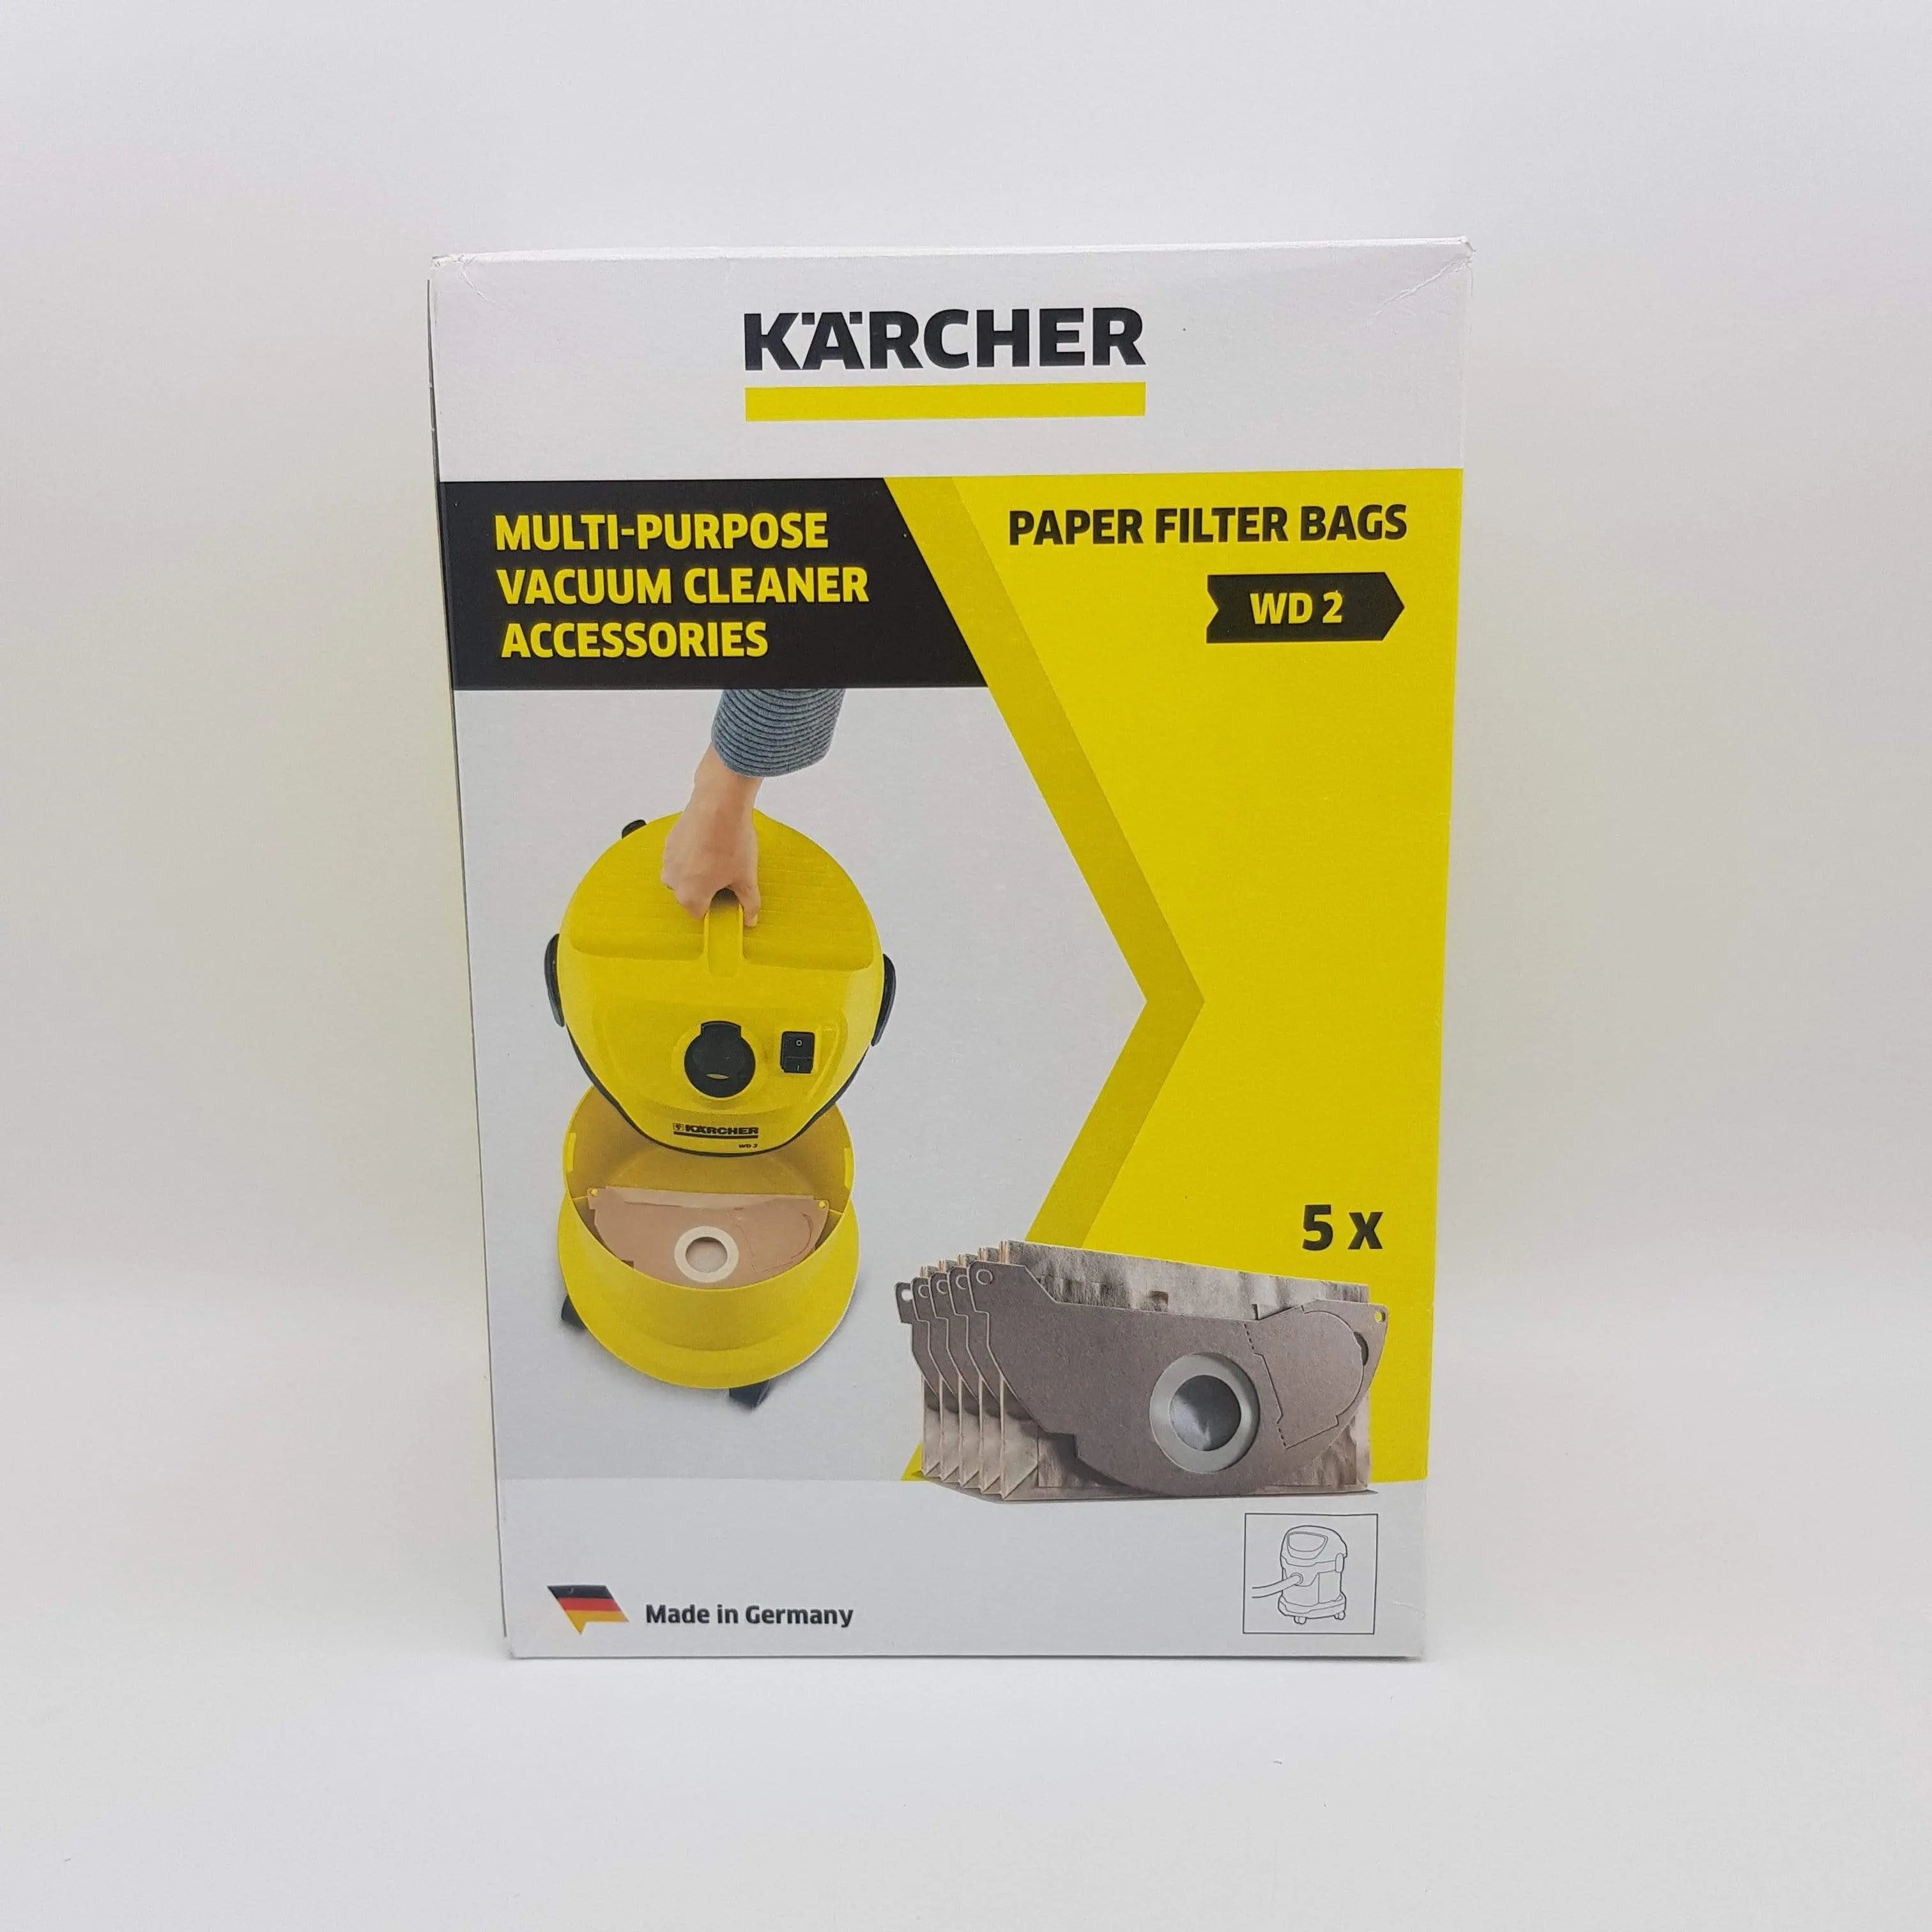 Sacchi per bidone aspirapolvere Karcher originali wd2500m KARCHER